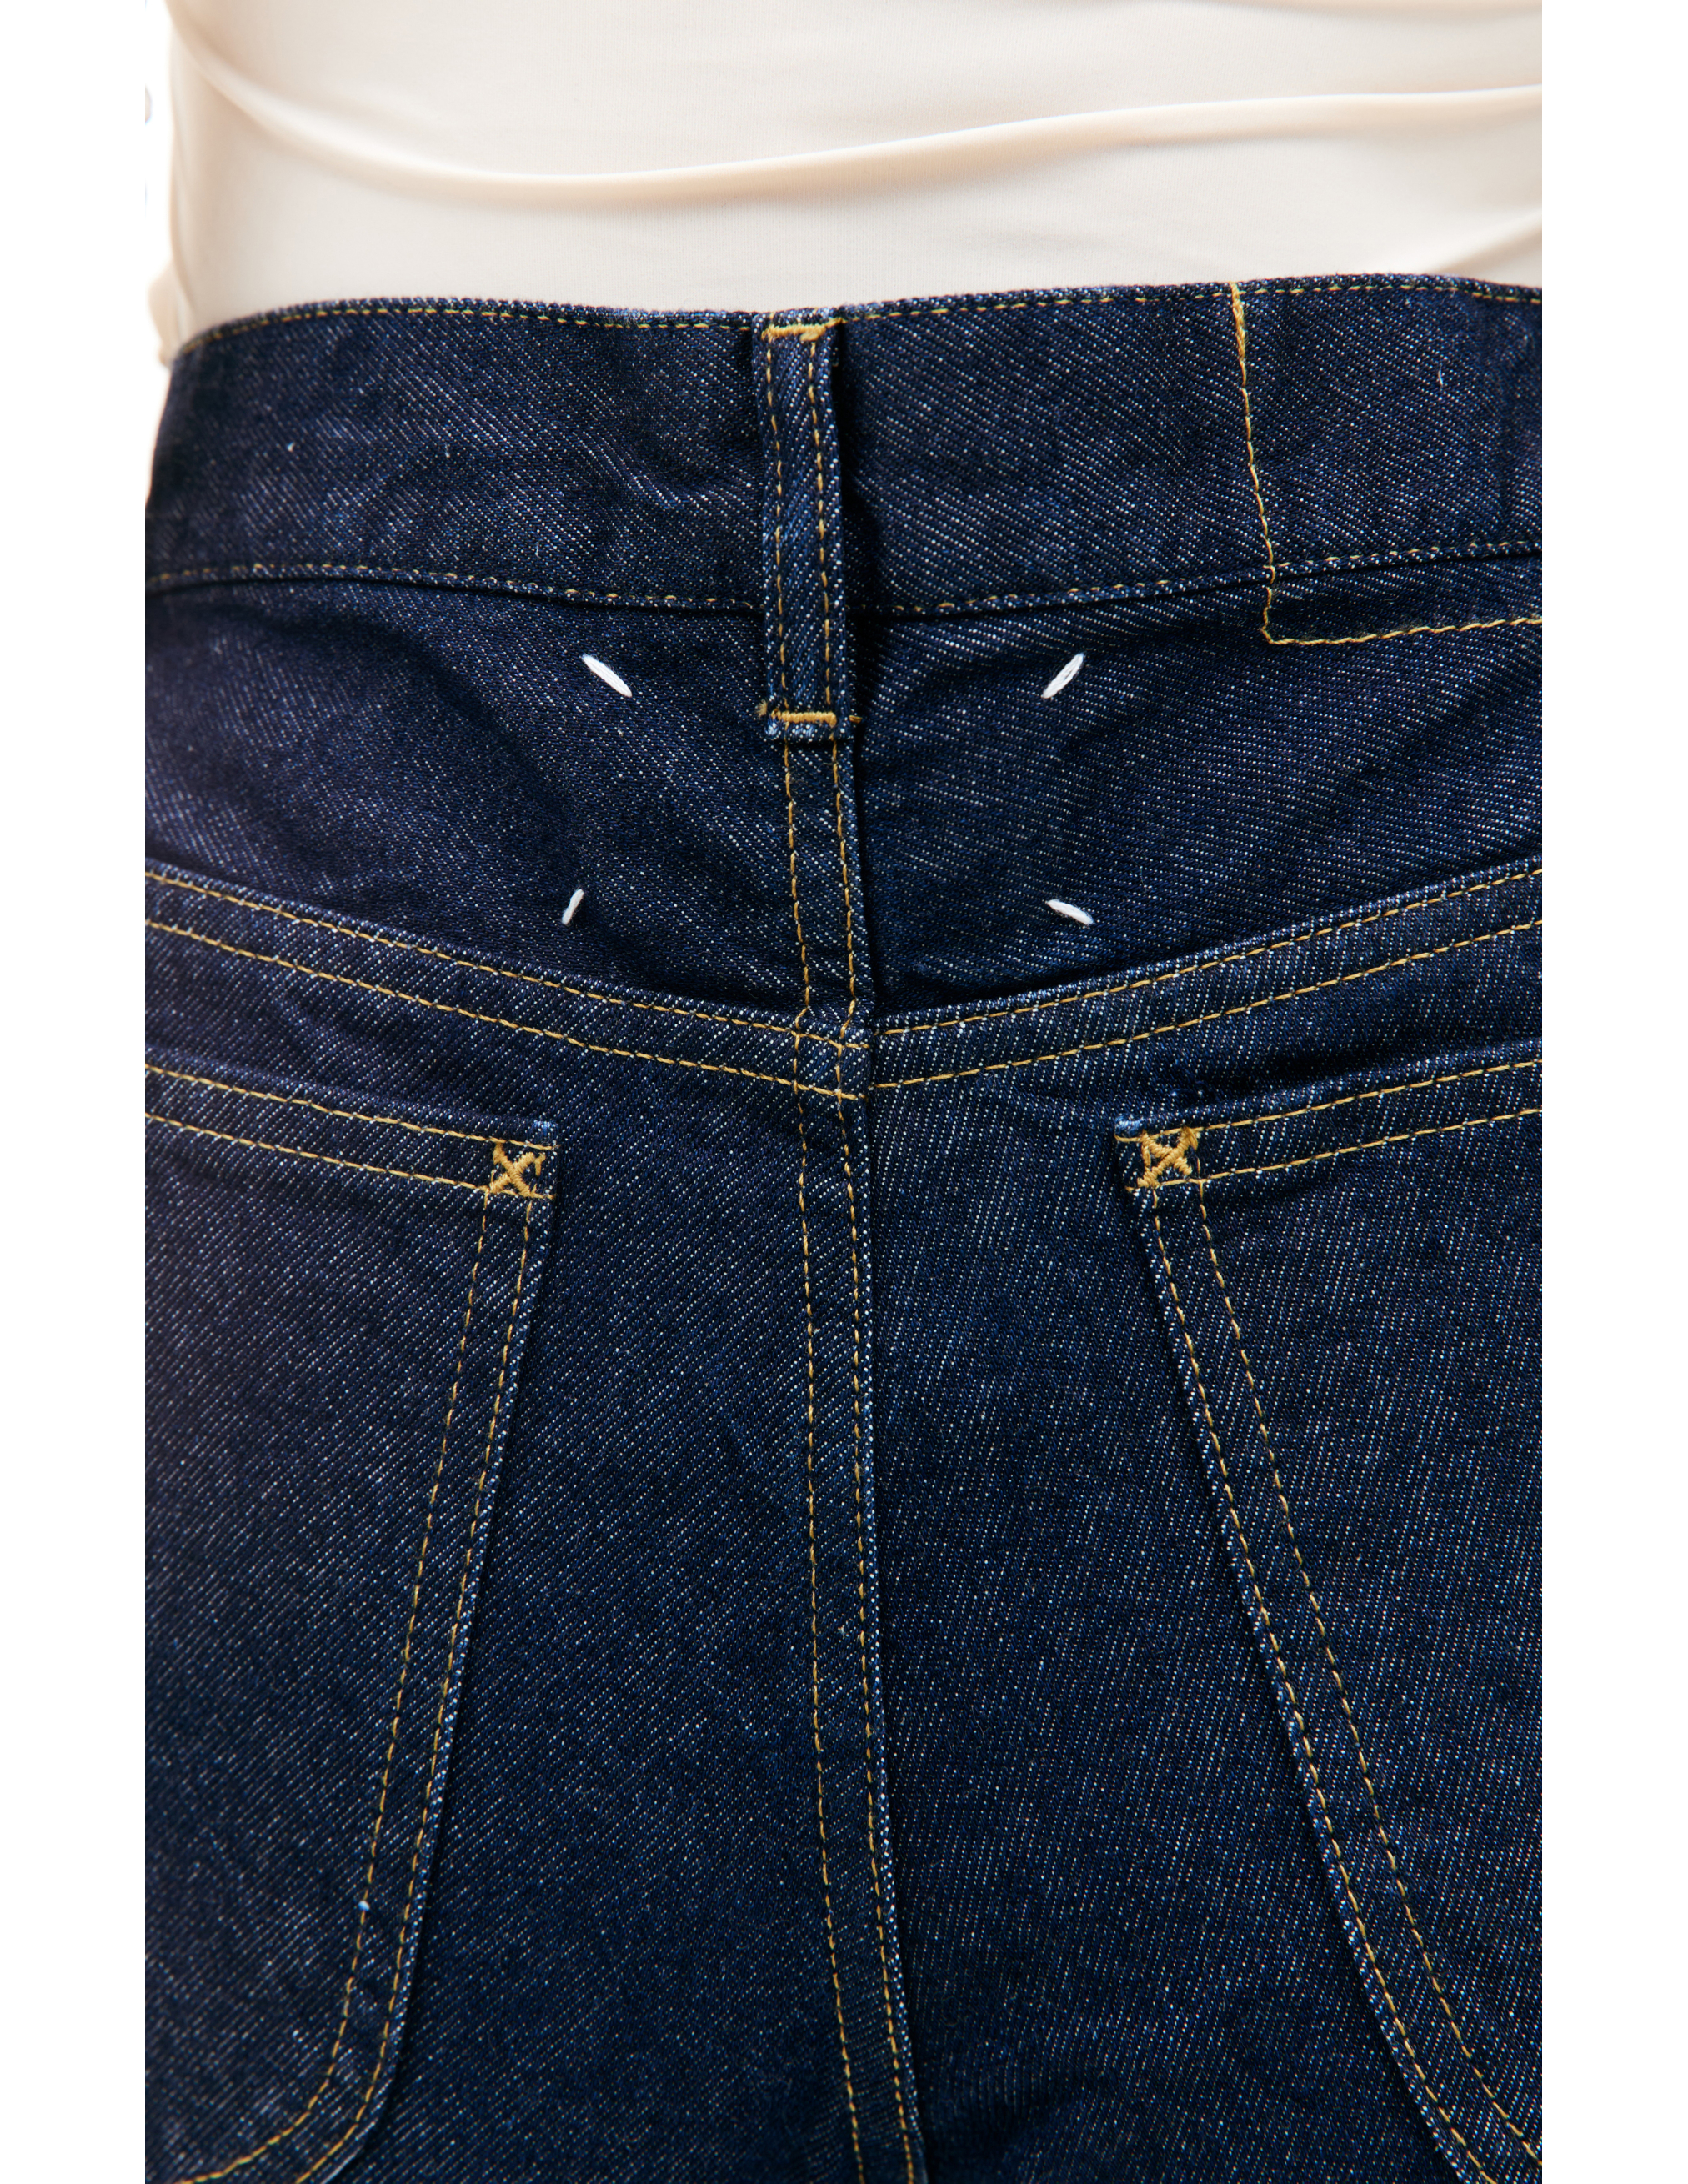 Прямые джинсы с контрастной строчкой Maison Margiela S67LA0026/S30854/470, размер 30;32;34 S67LA0026/S30854/470 - фото 4